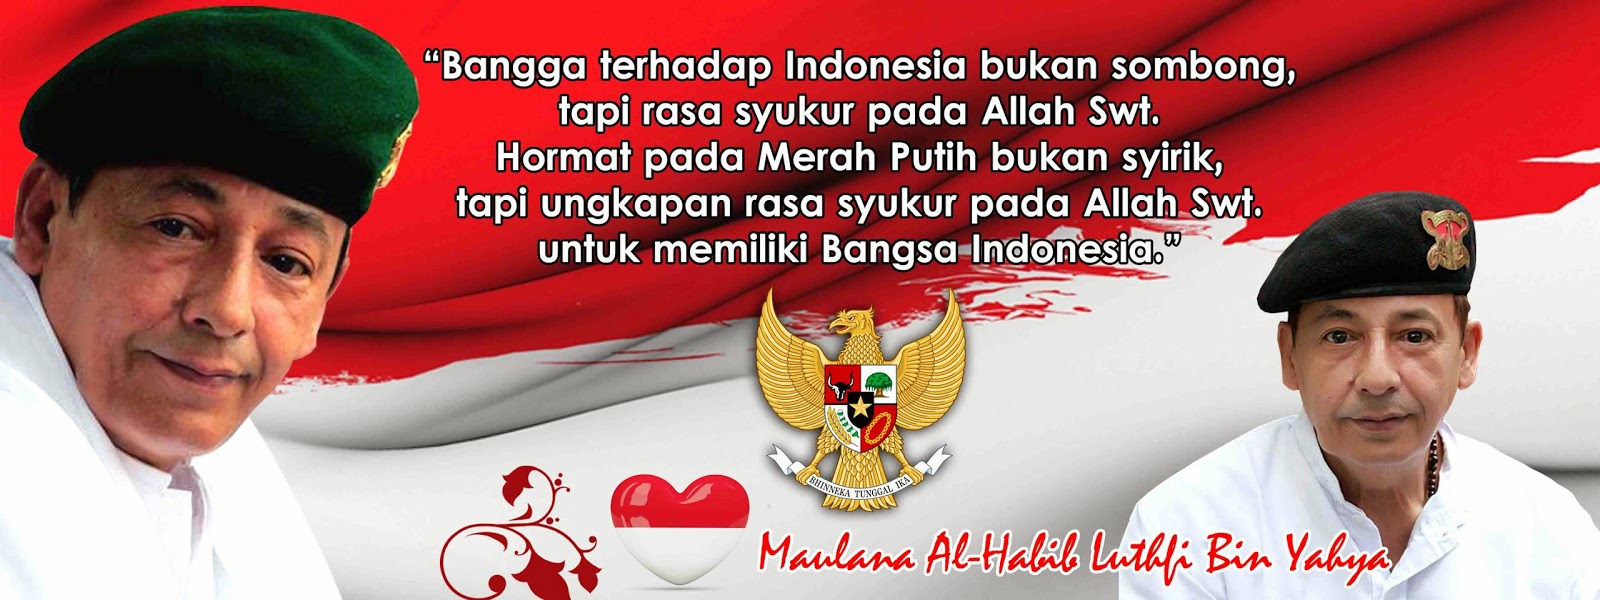 BERDIRI UNTUK BANGSA Kata kata  Mutiara  Maulana Al Habib 